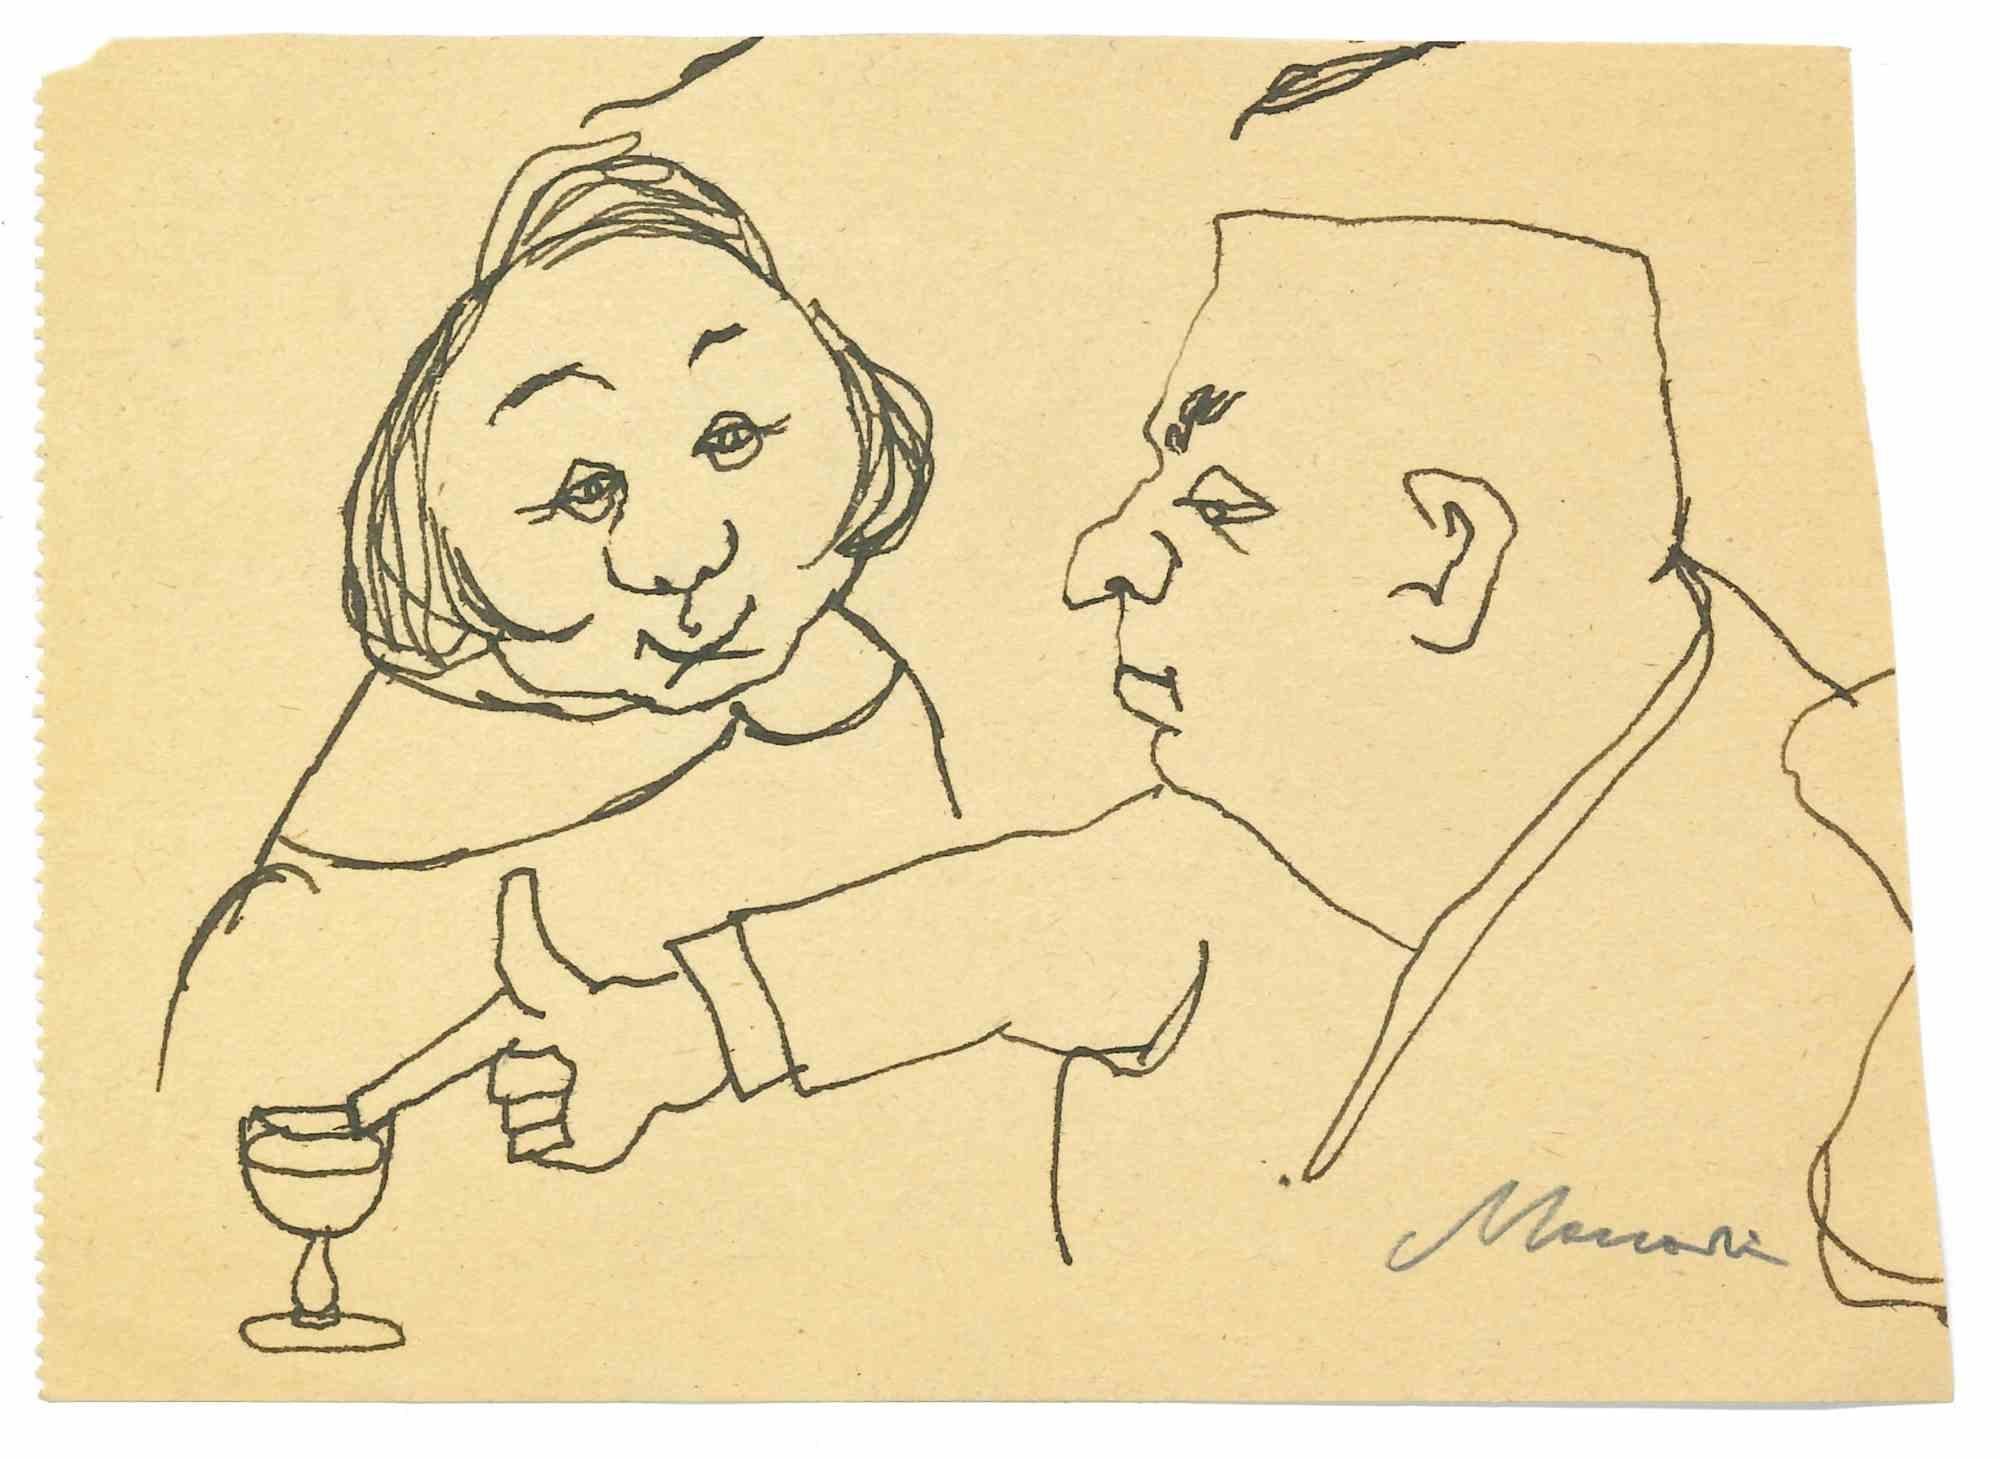 Trinken ist eine Porzellan-Tuschezeichnung von Mino Maccari (1924-1989) aus der Mitte des 20. Jahrhunderts.

Handsigniert.

Guter Zustand mit leichten Stockflecken.

Mino Maccari (Siena, 1924-Rom, 16. Juni 1989) war ein italienischer Schriftsteller,